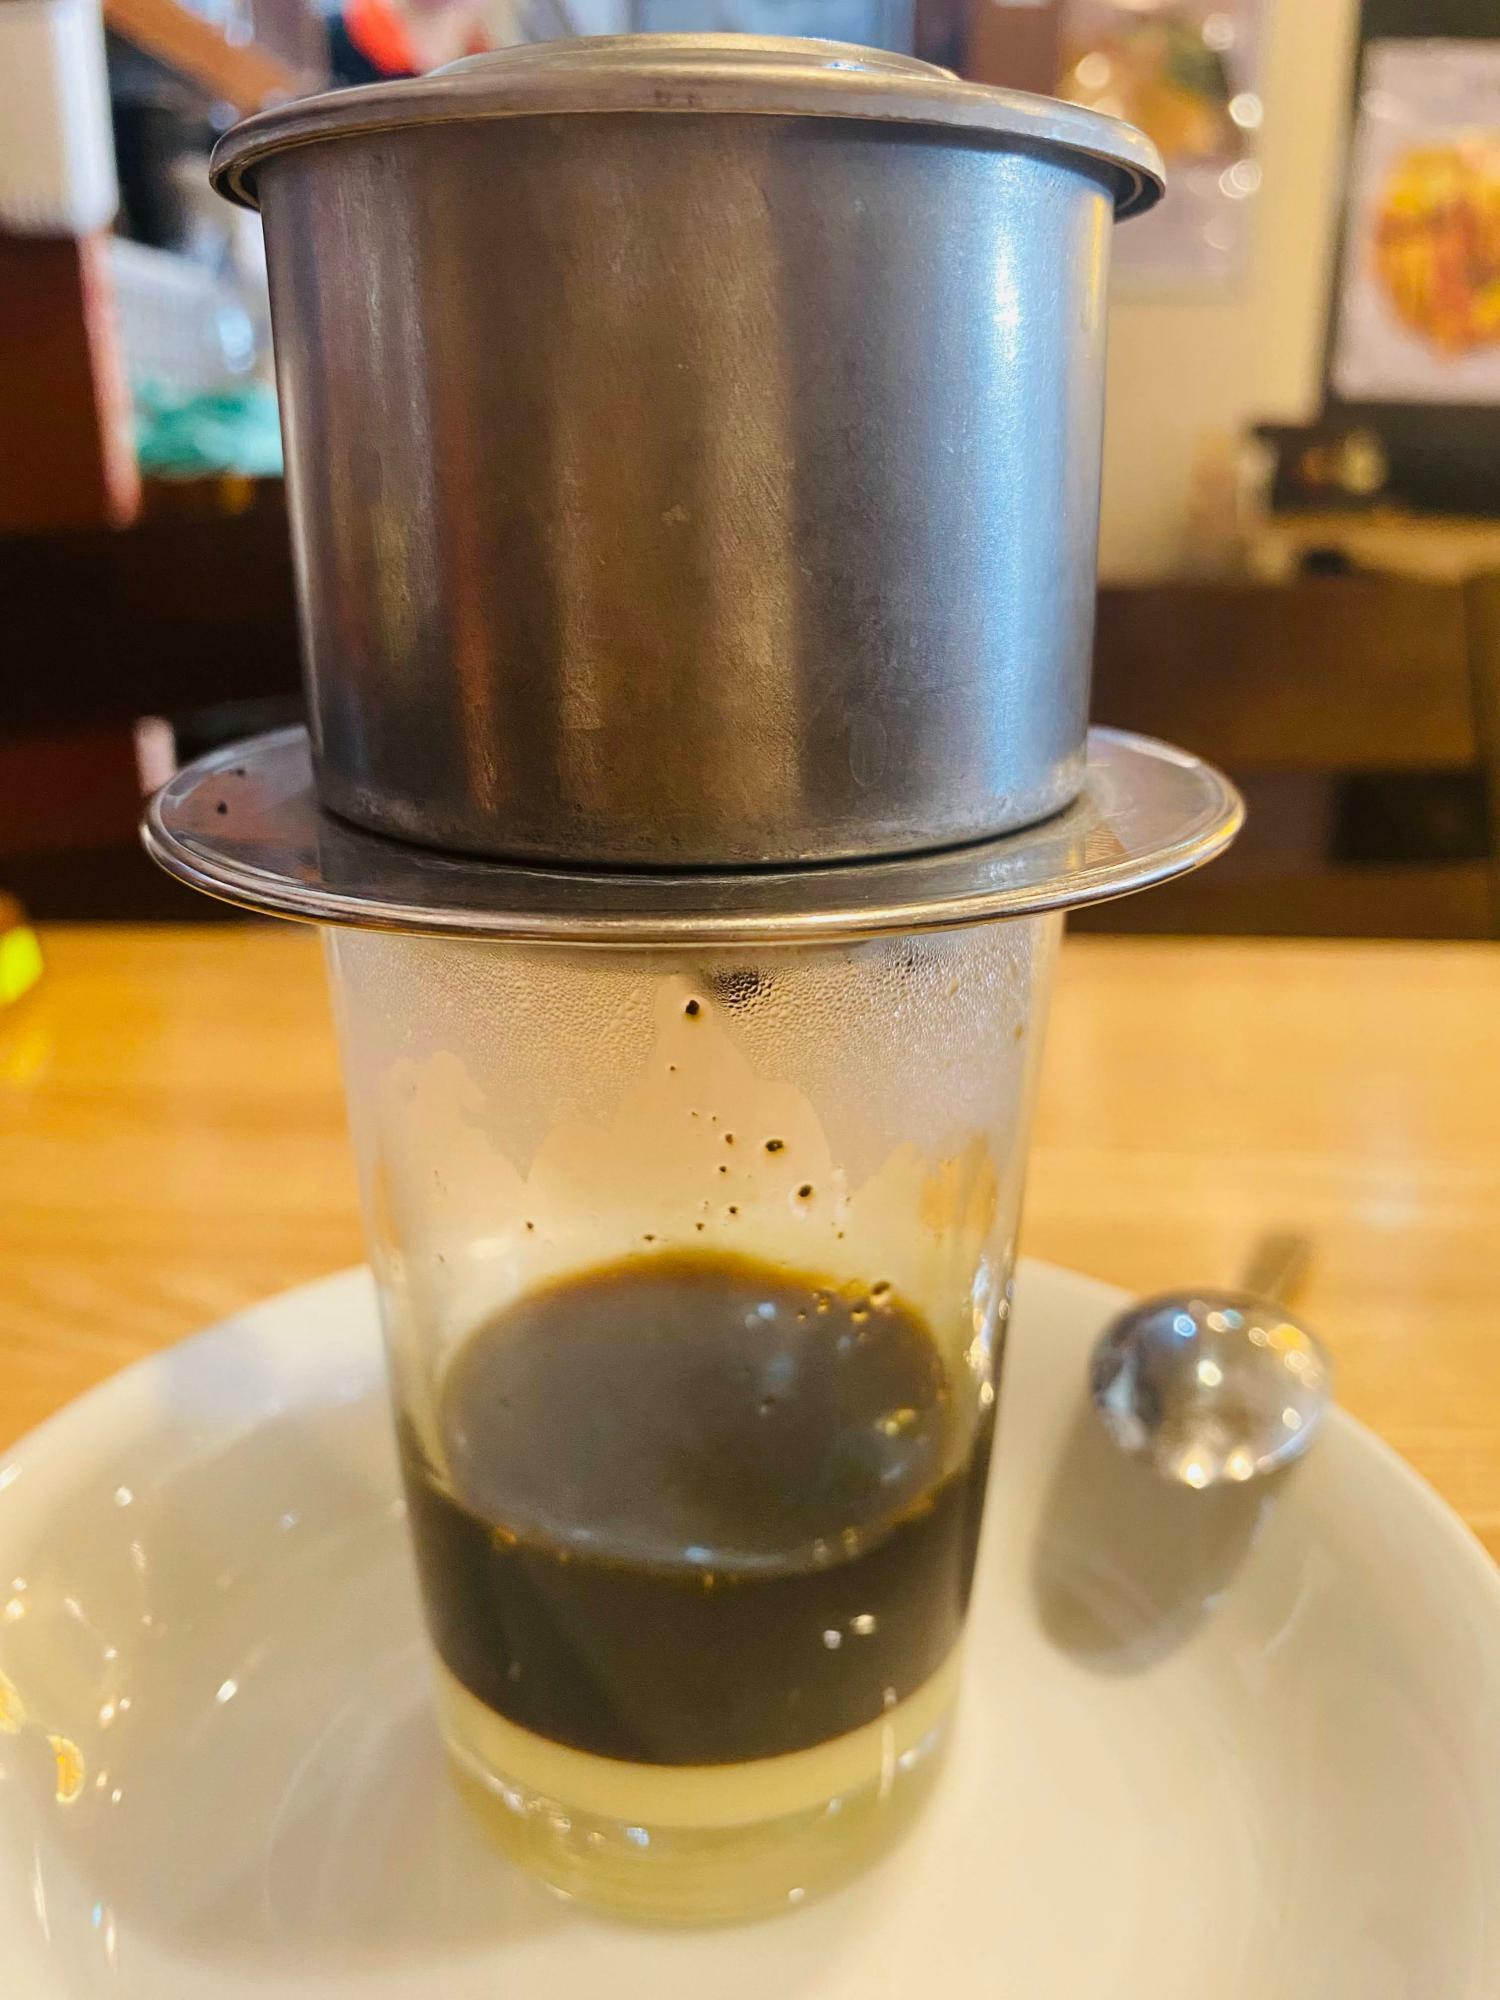 「PHO VIET QUAN」の「ベトナムコーヒー」 抽出されるまで待ちます